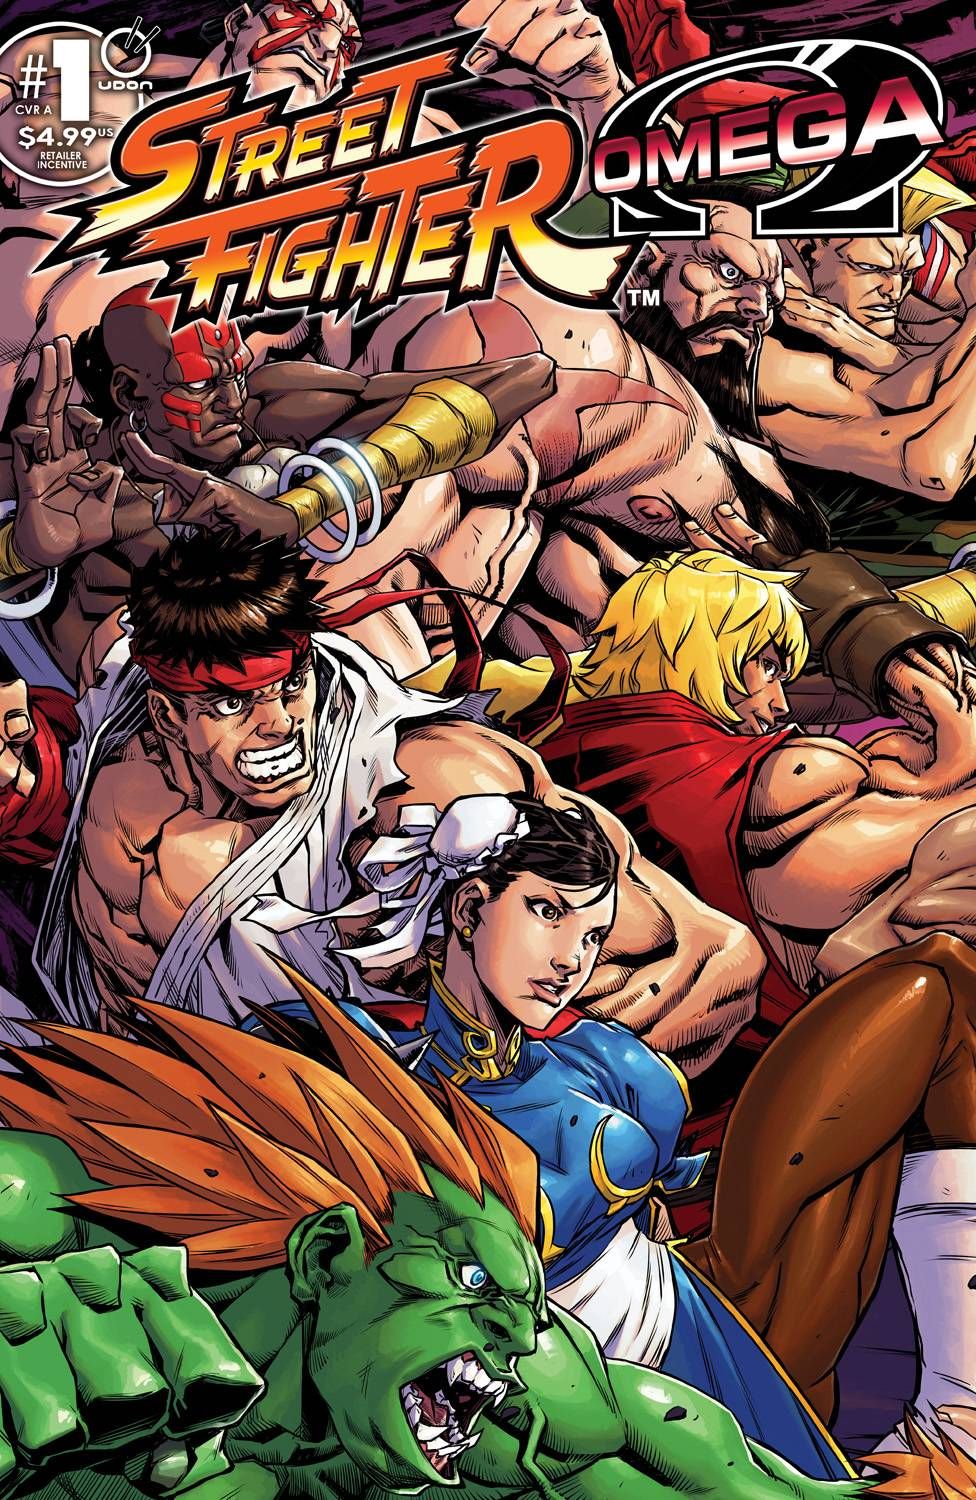 Street Fighter Omega #1 Comic